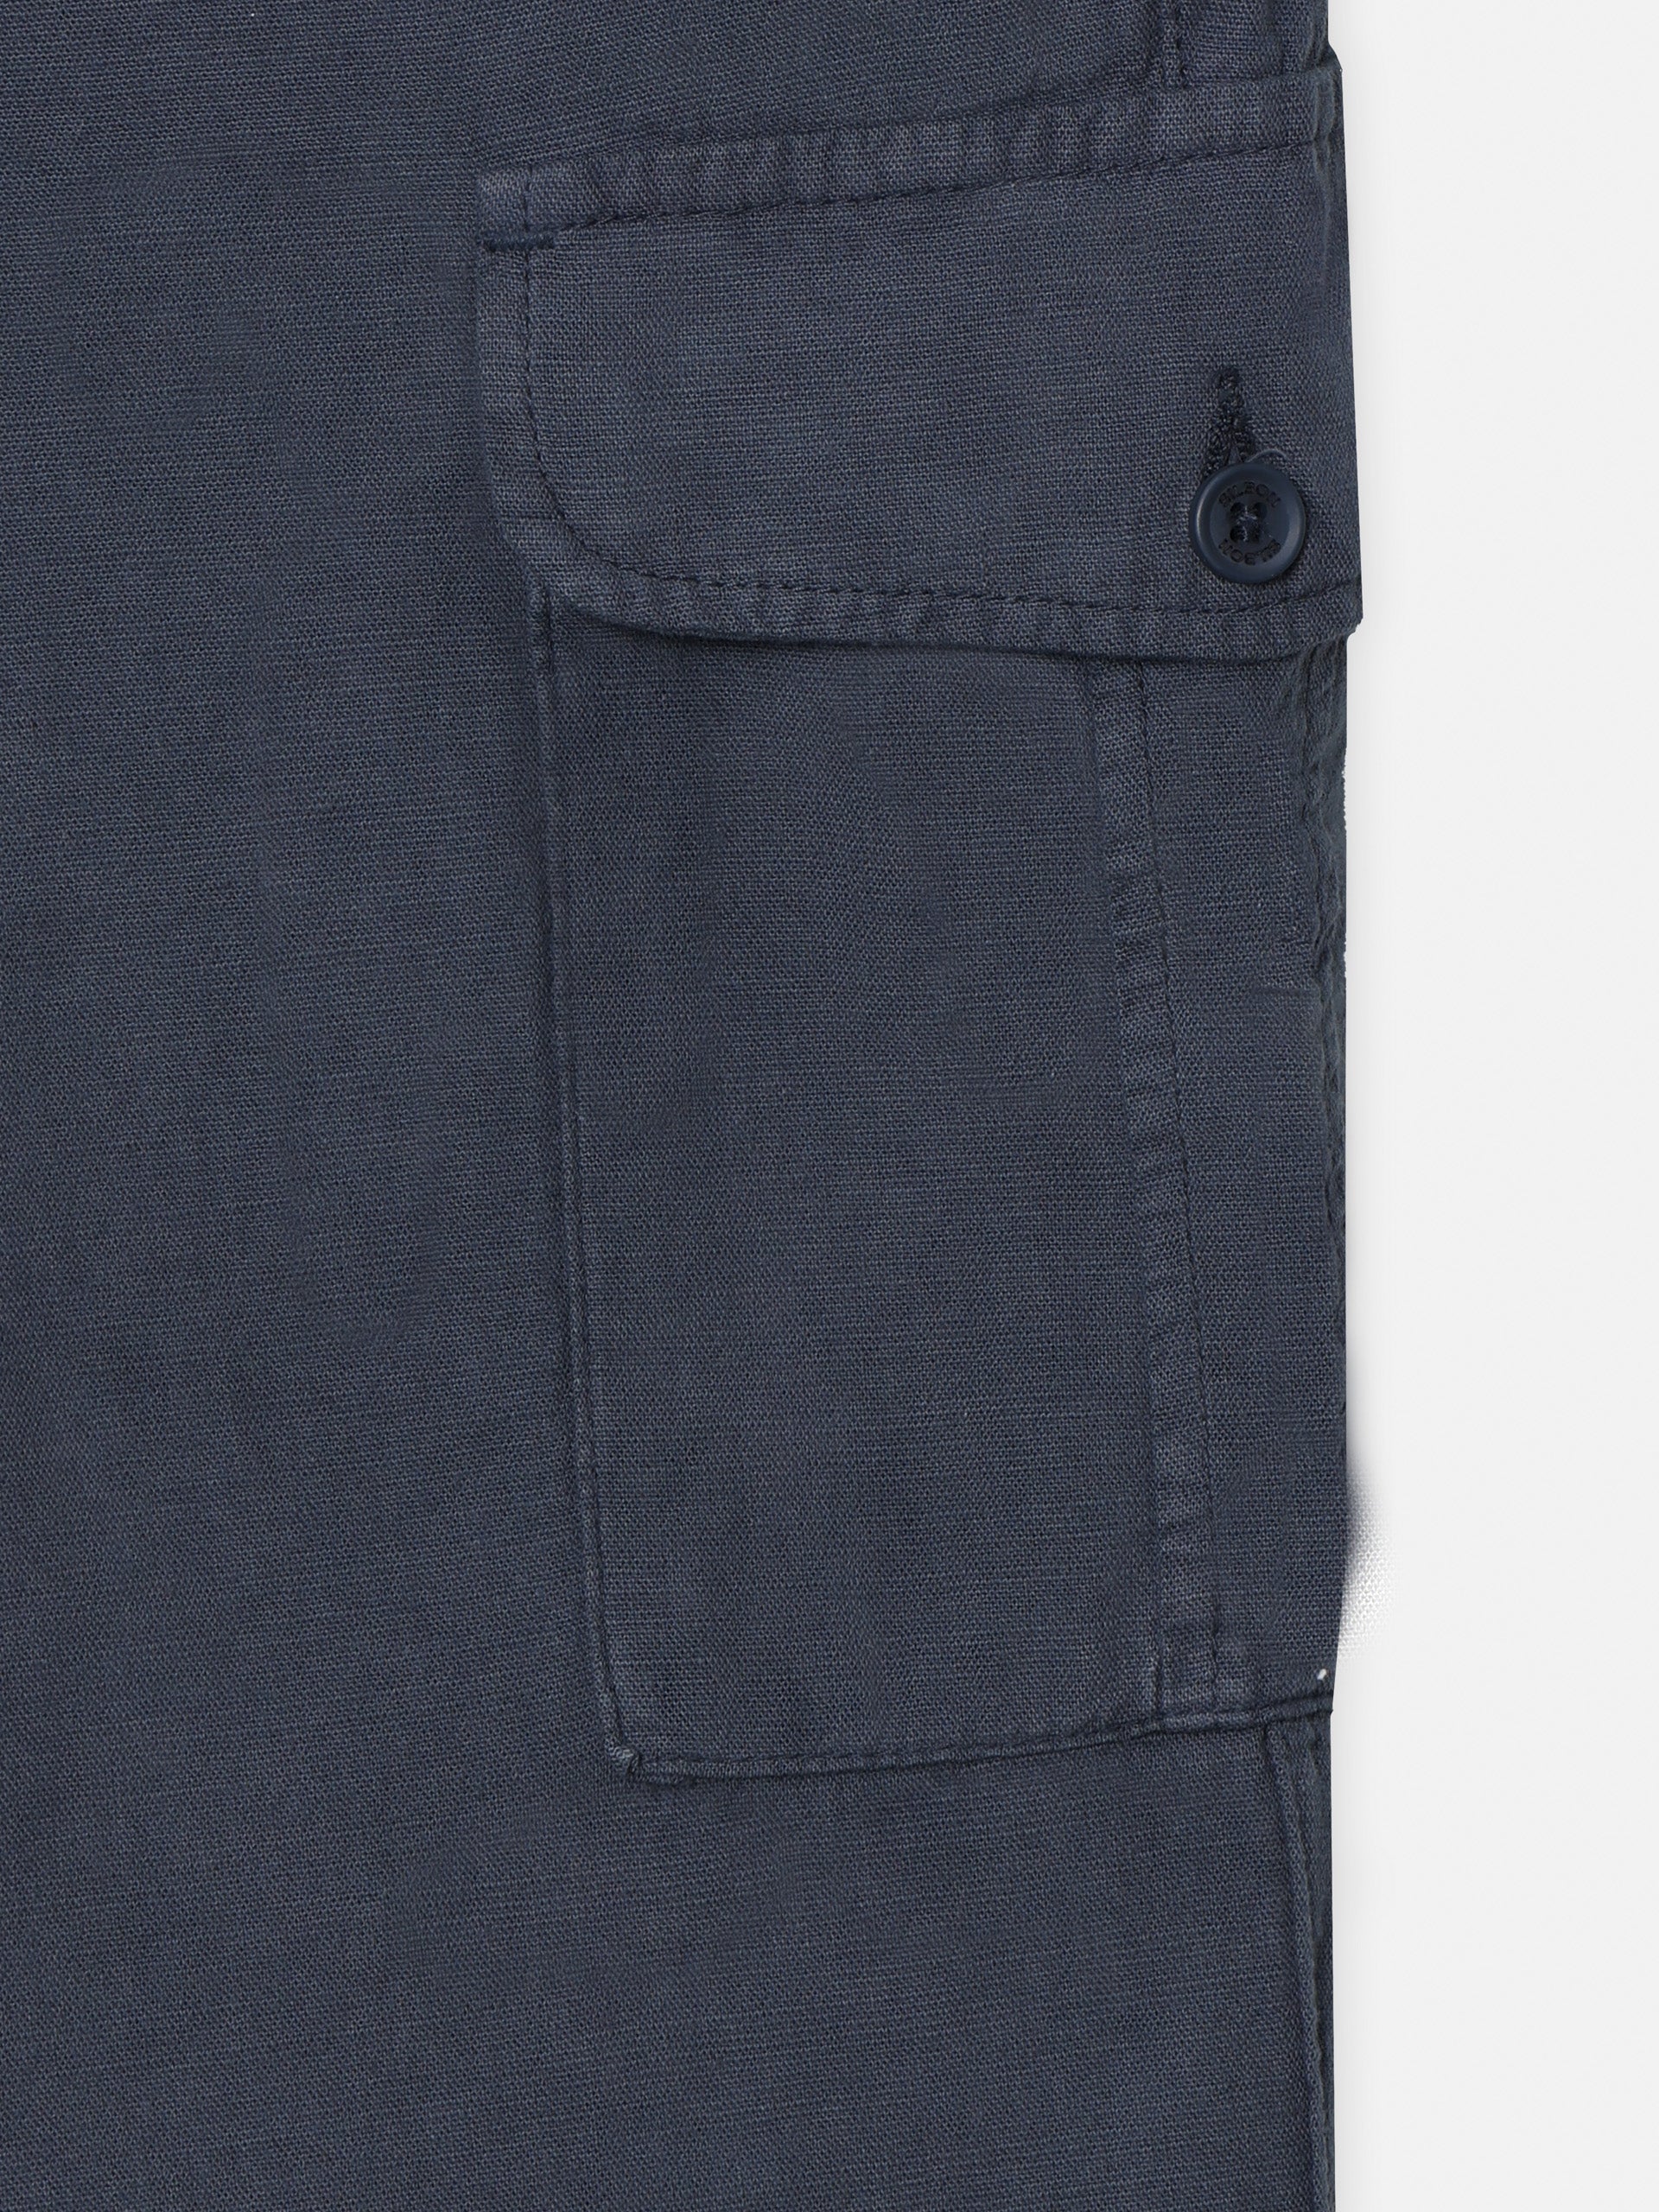 Pantalon sport cargo lino azul indigo